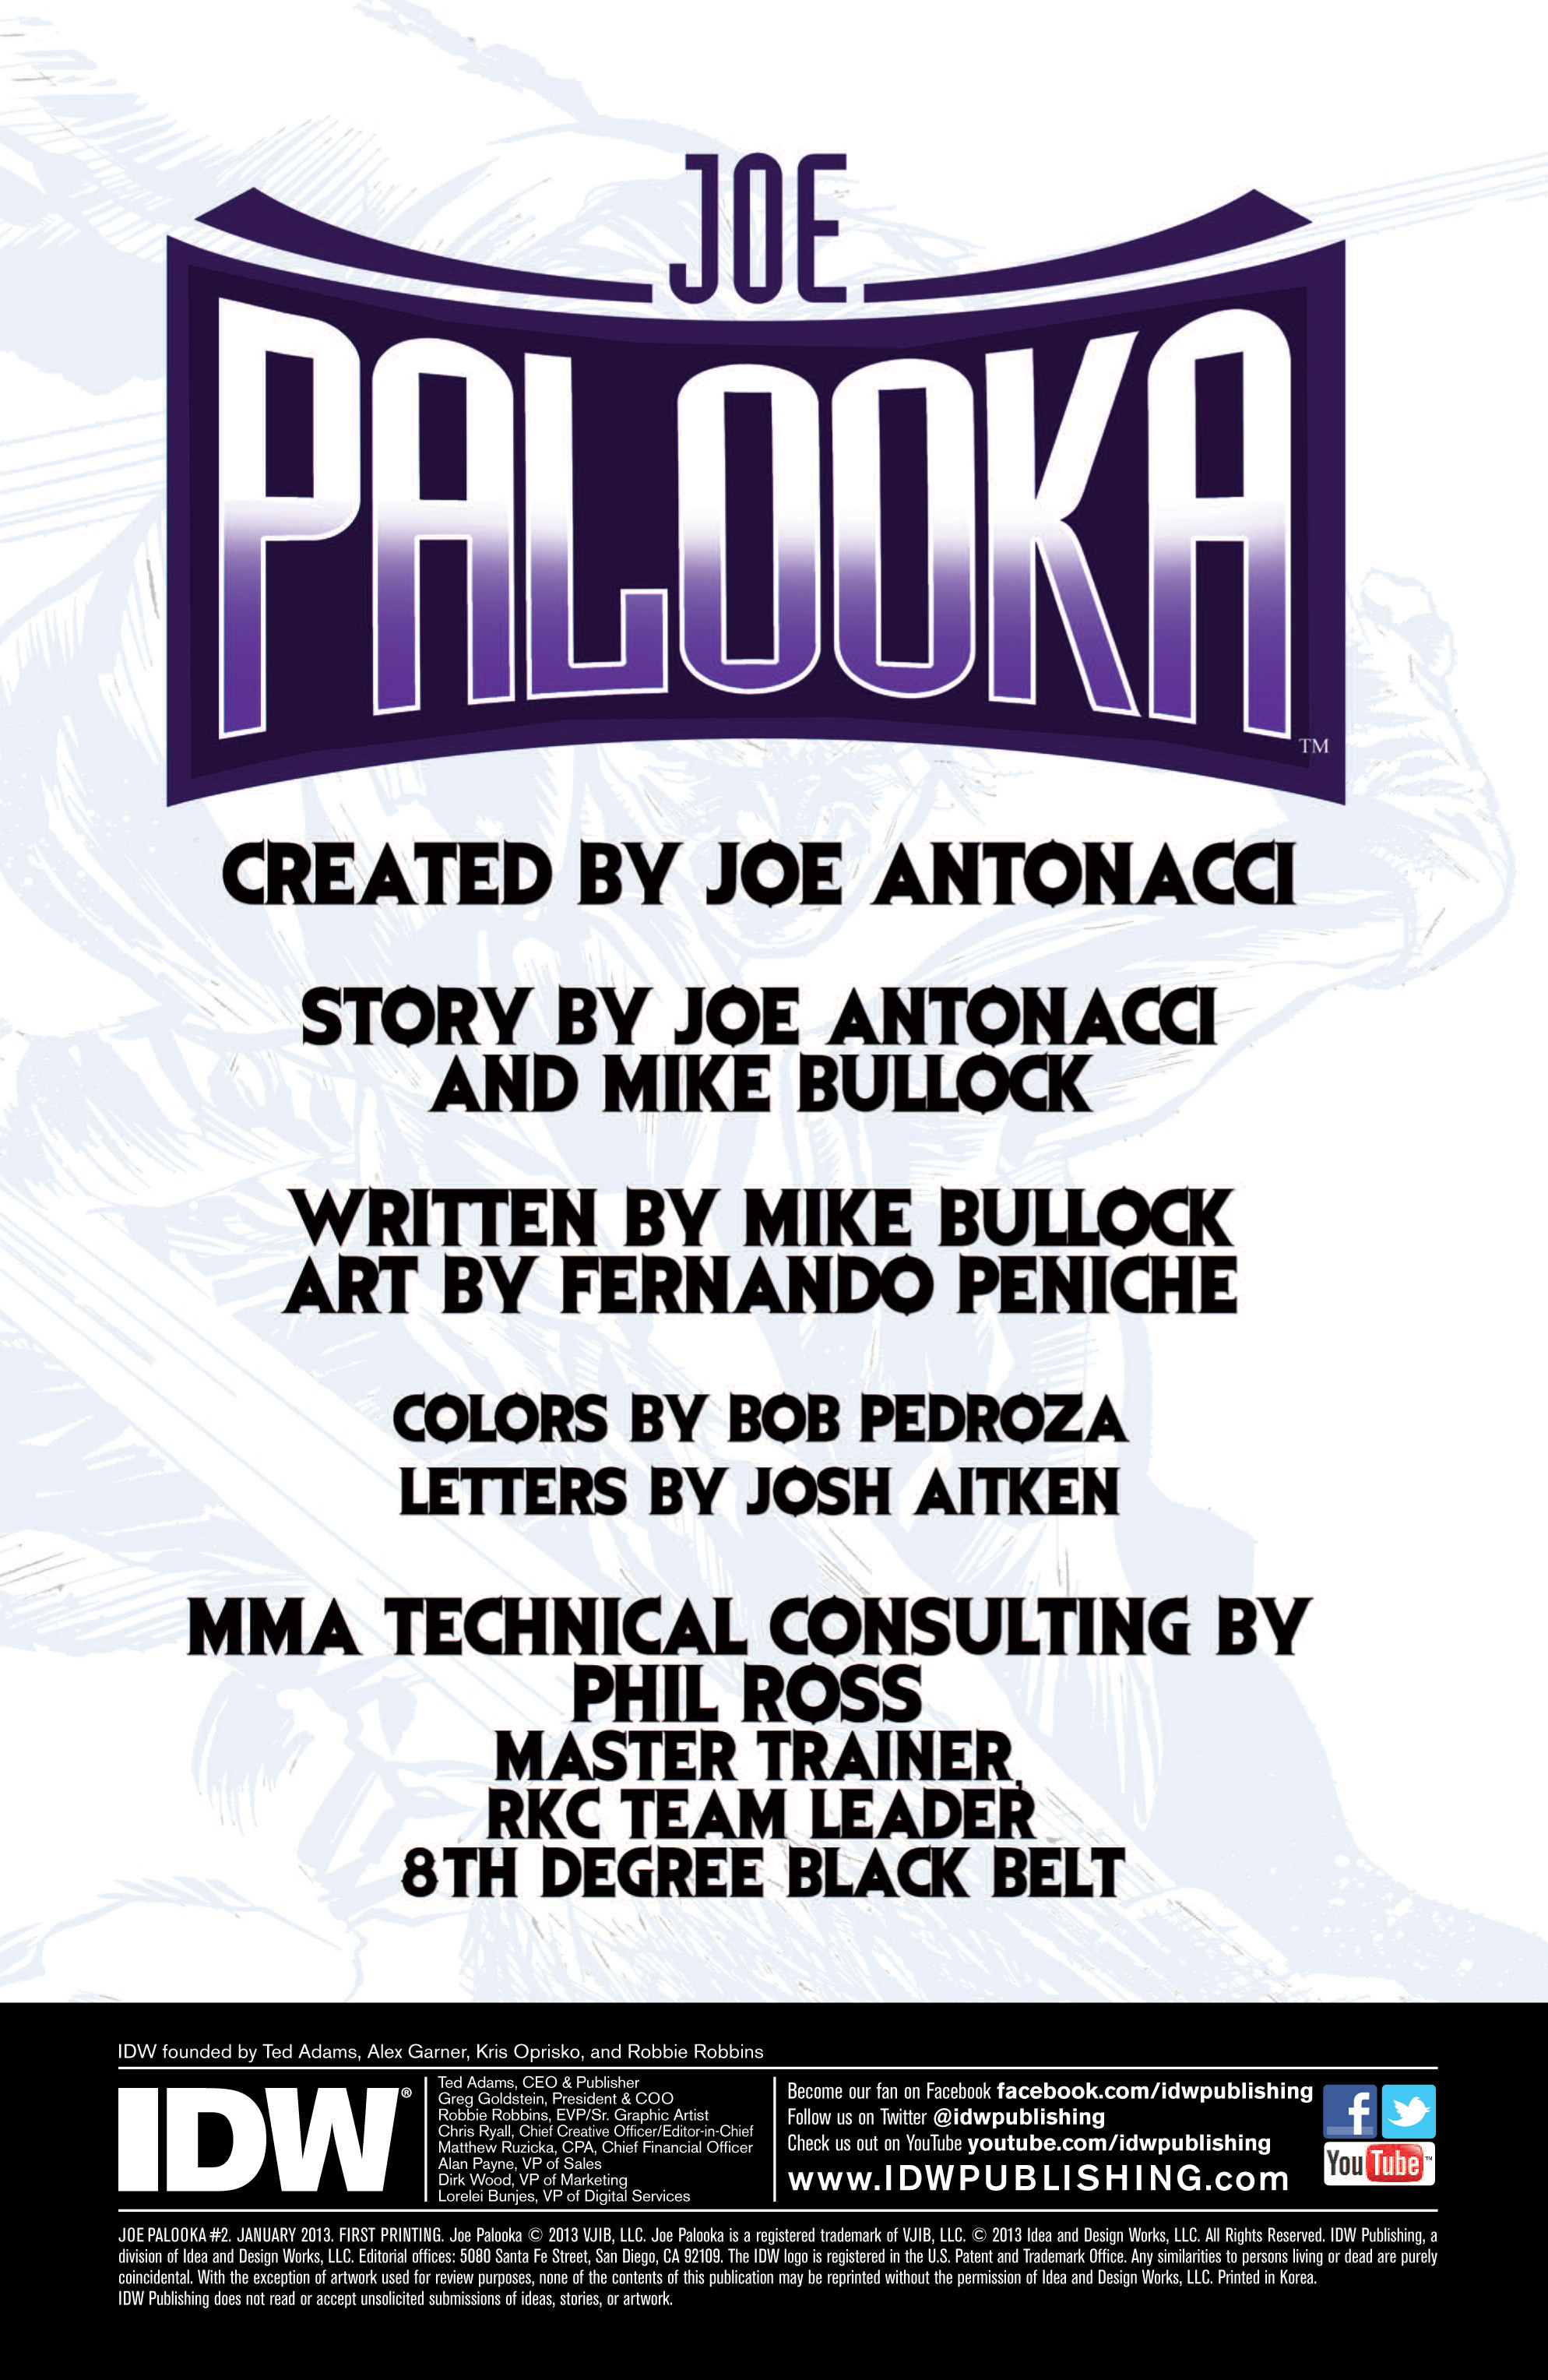 Read online Joe Palooka comic -  Issue #2 - 3